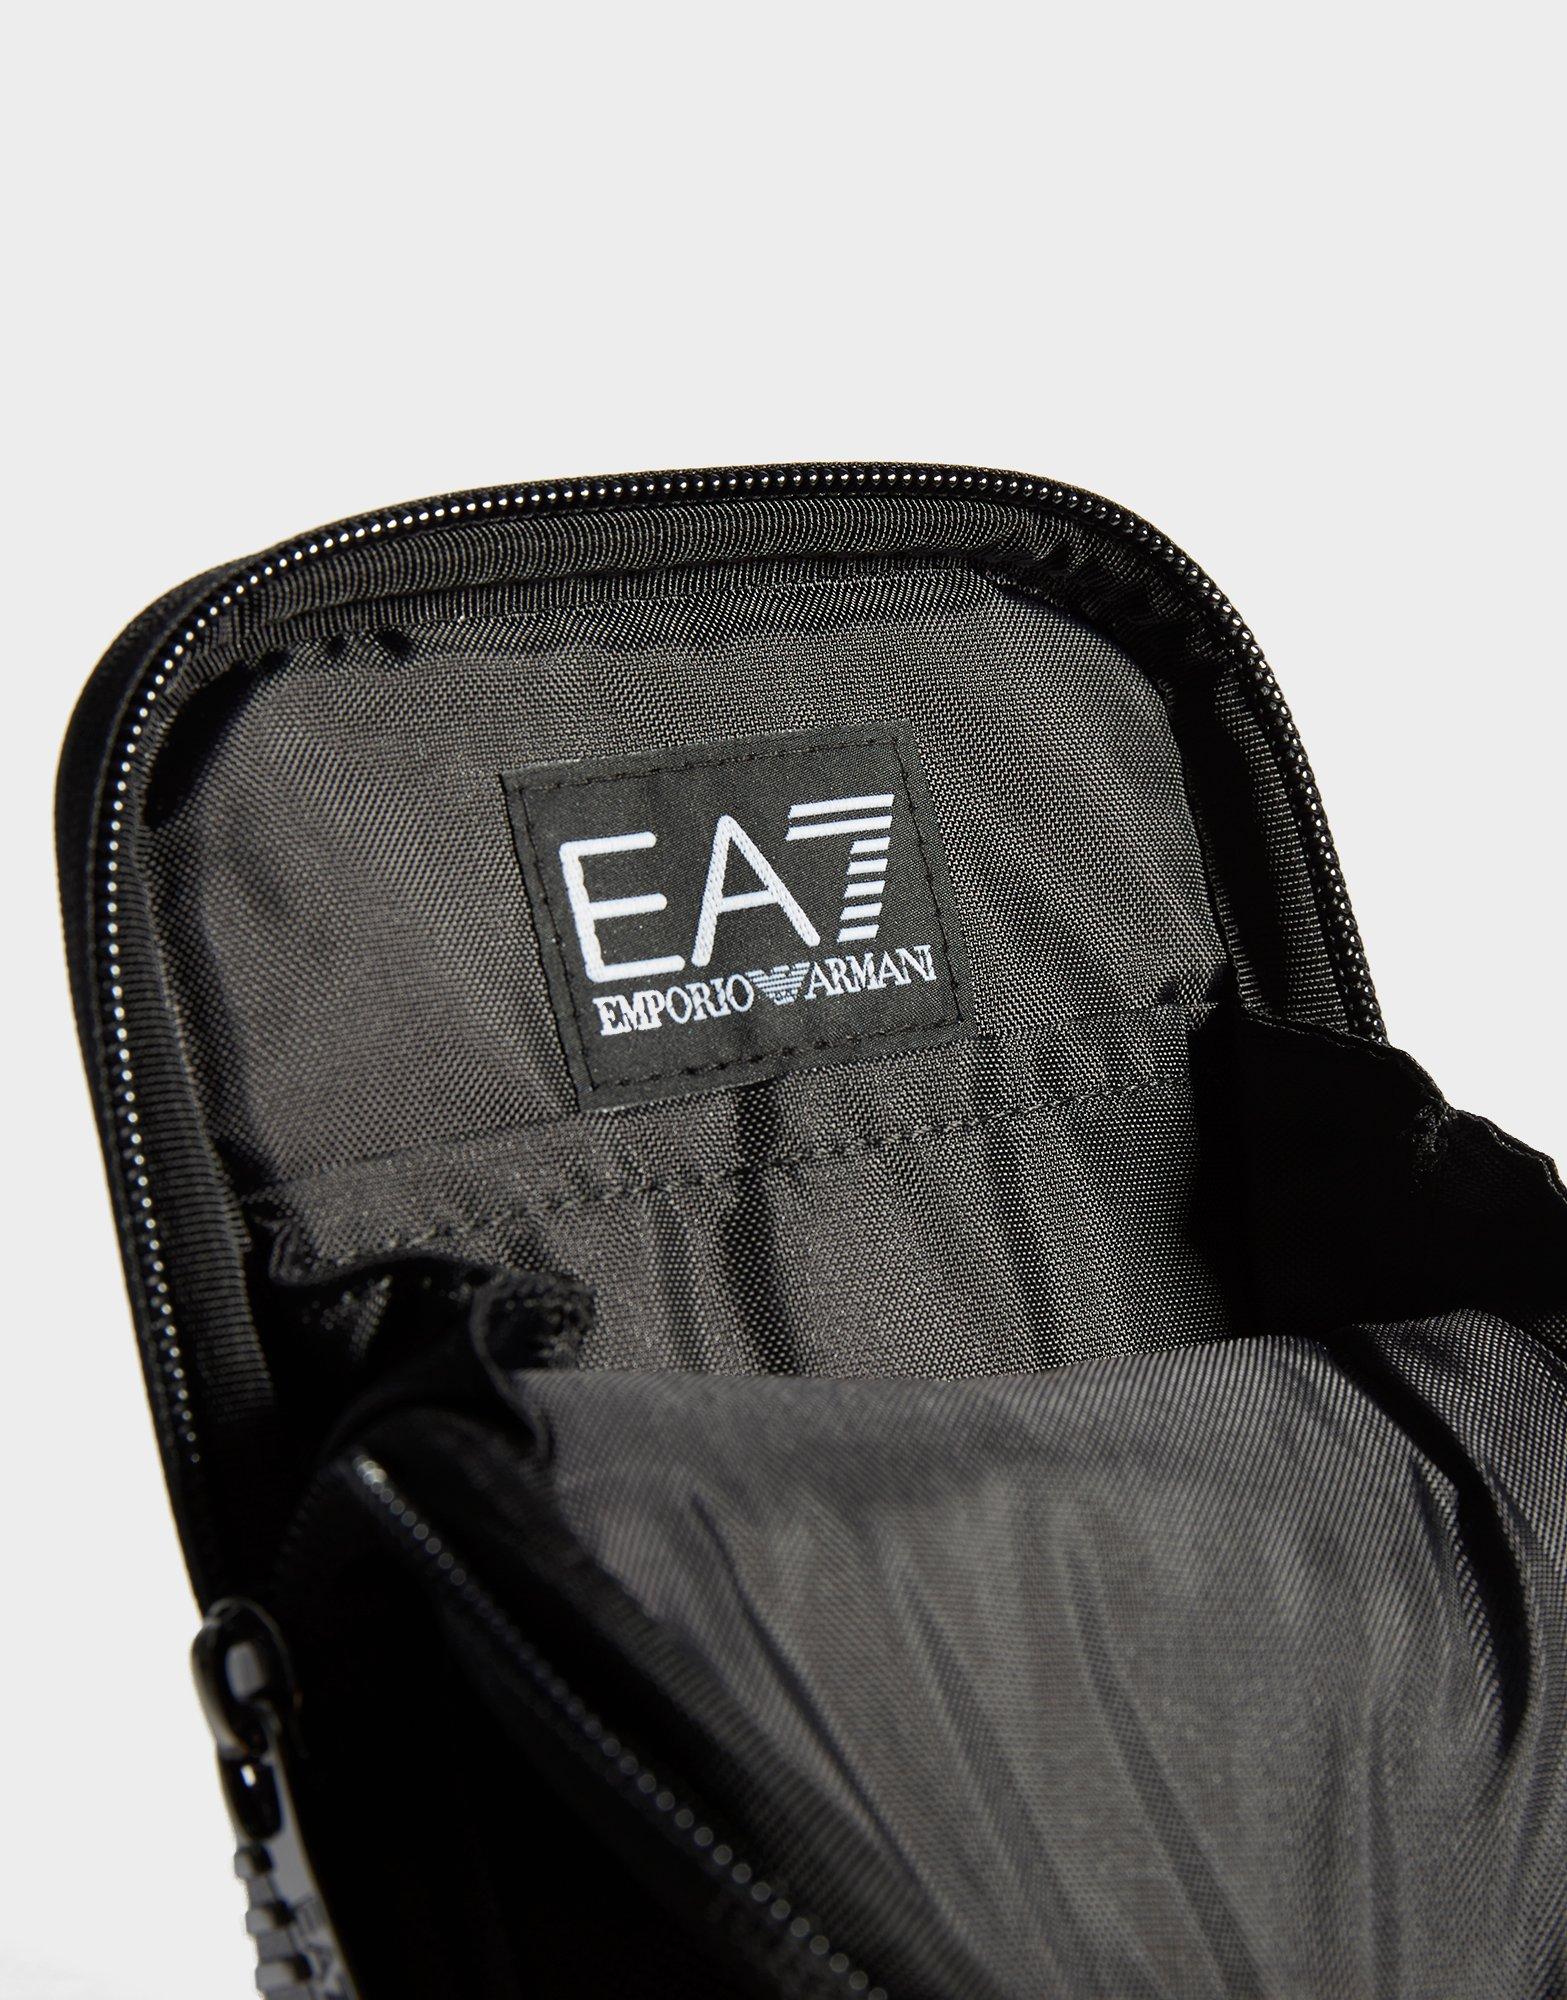 ea7 bag